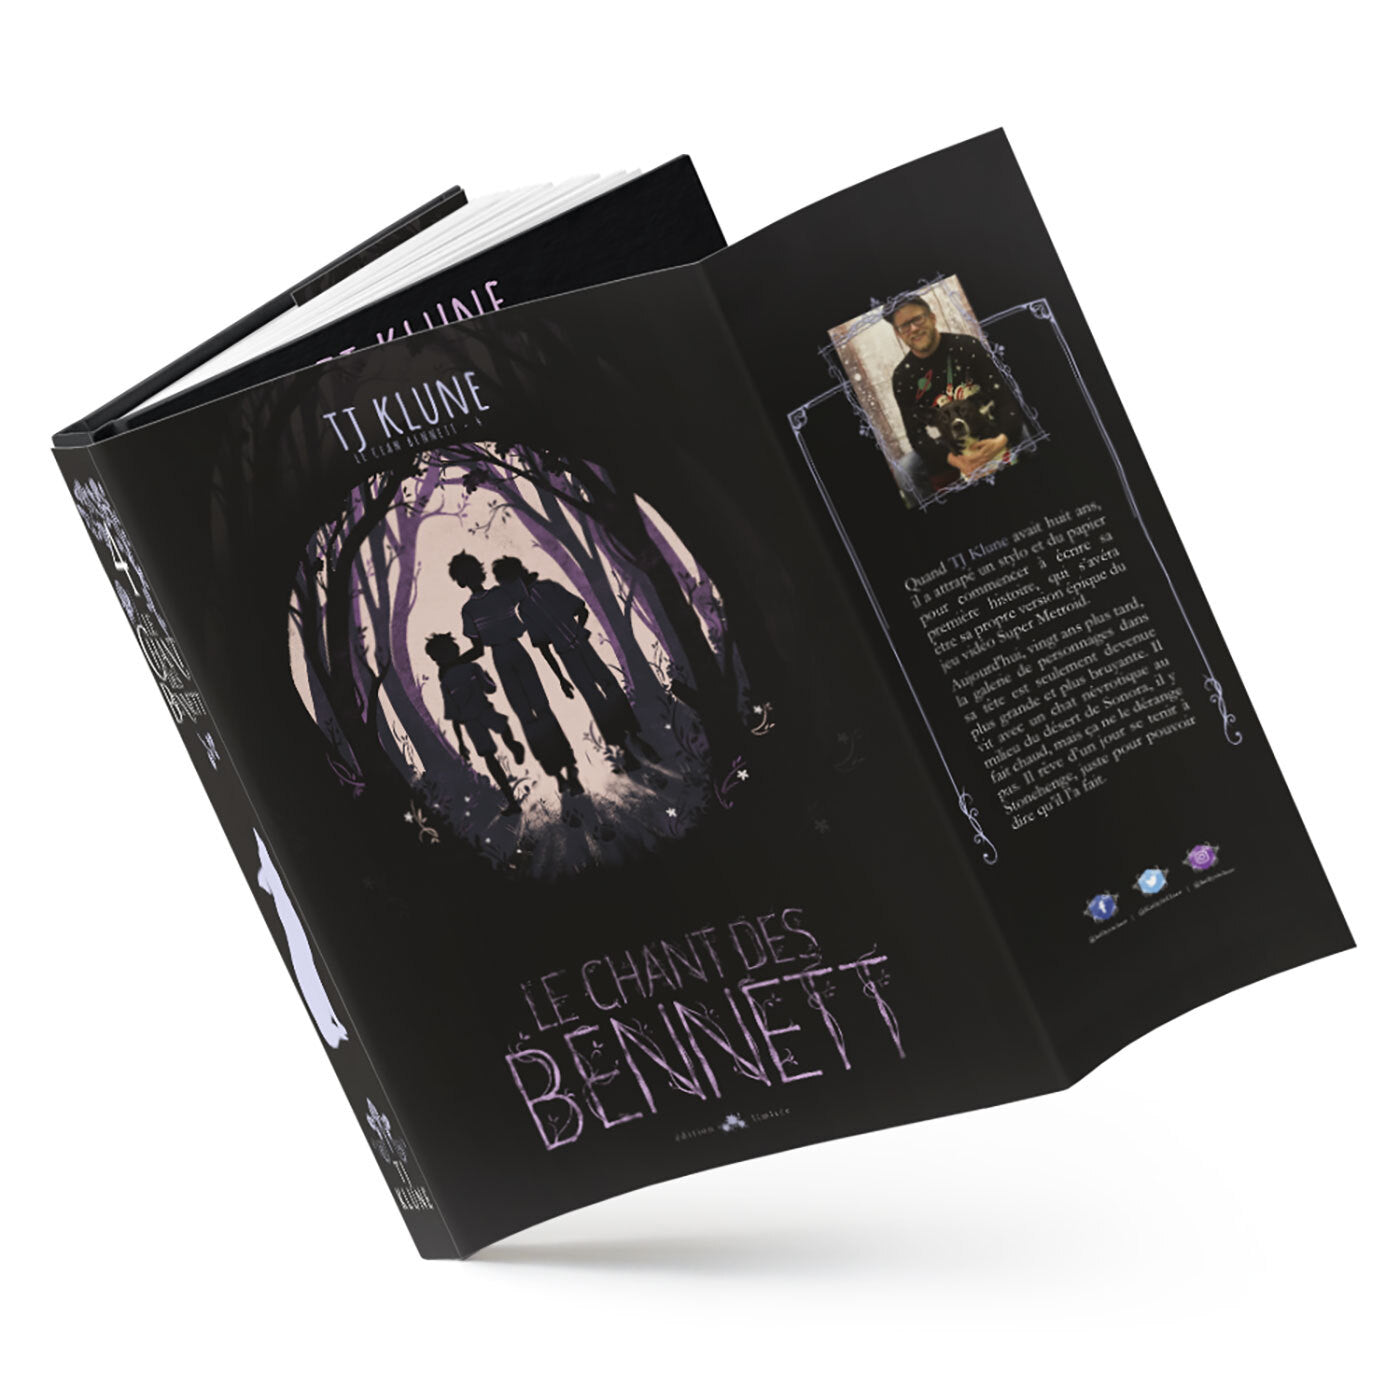 Le chant des Bennett - Les éditions Bookmark